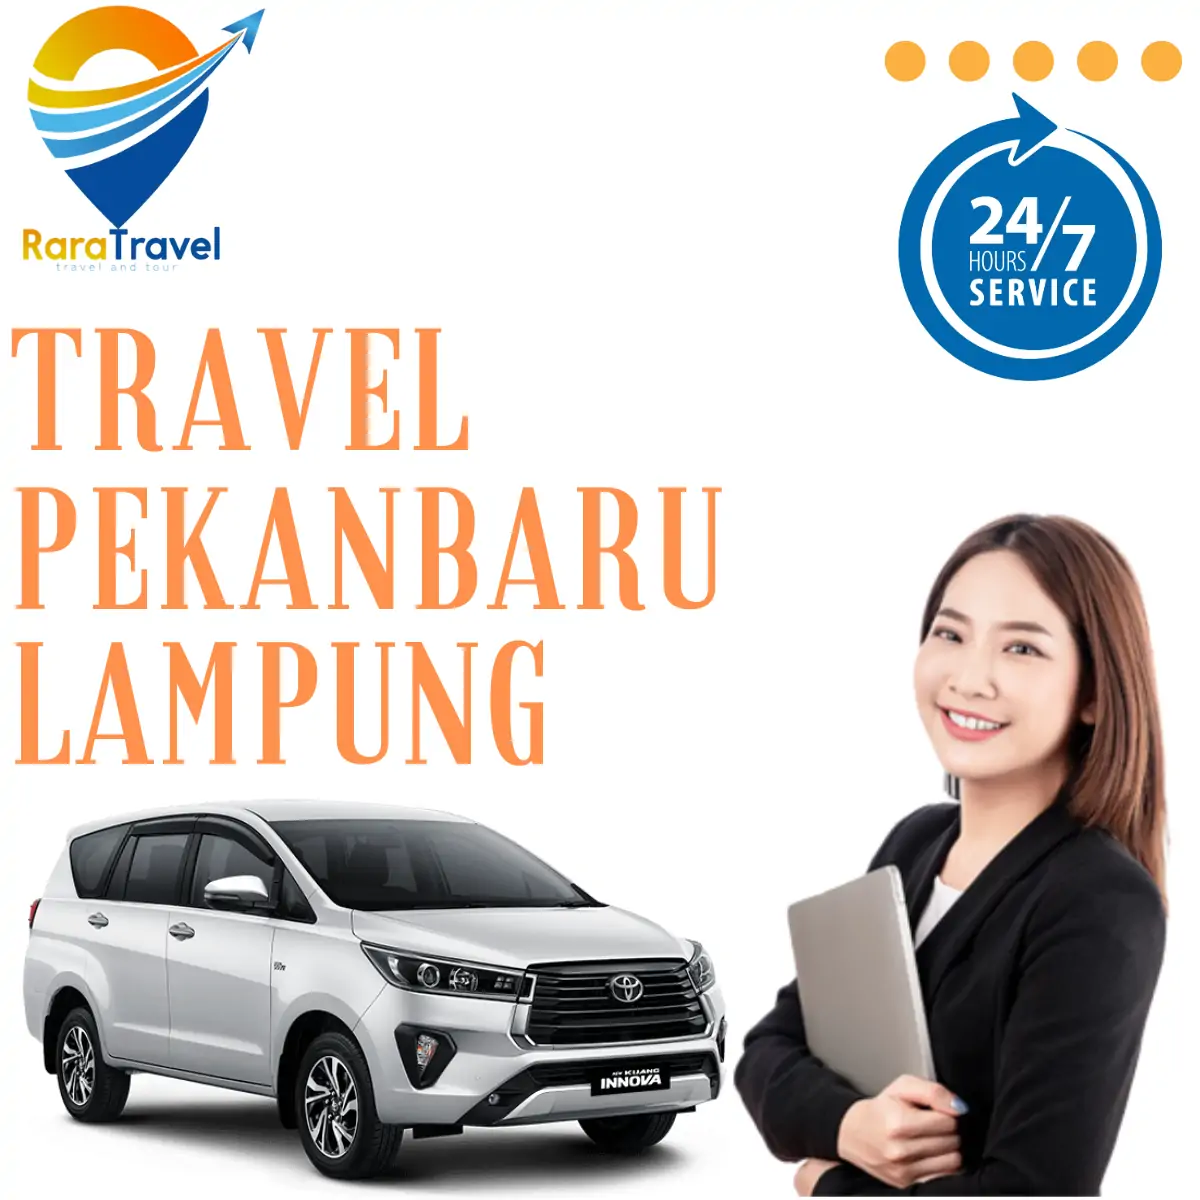 Travel Pekanbaru Lampung Full Toll: Harga Tiket Murah dan Jadwal Lengkap